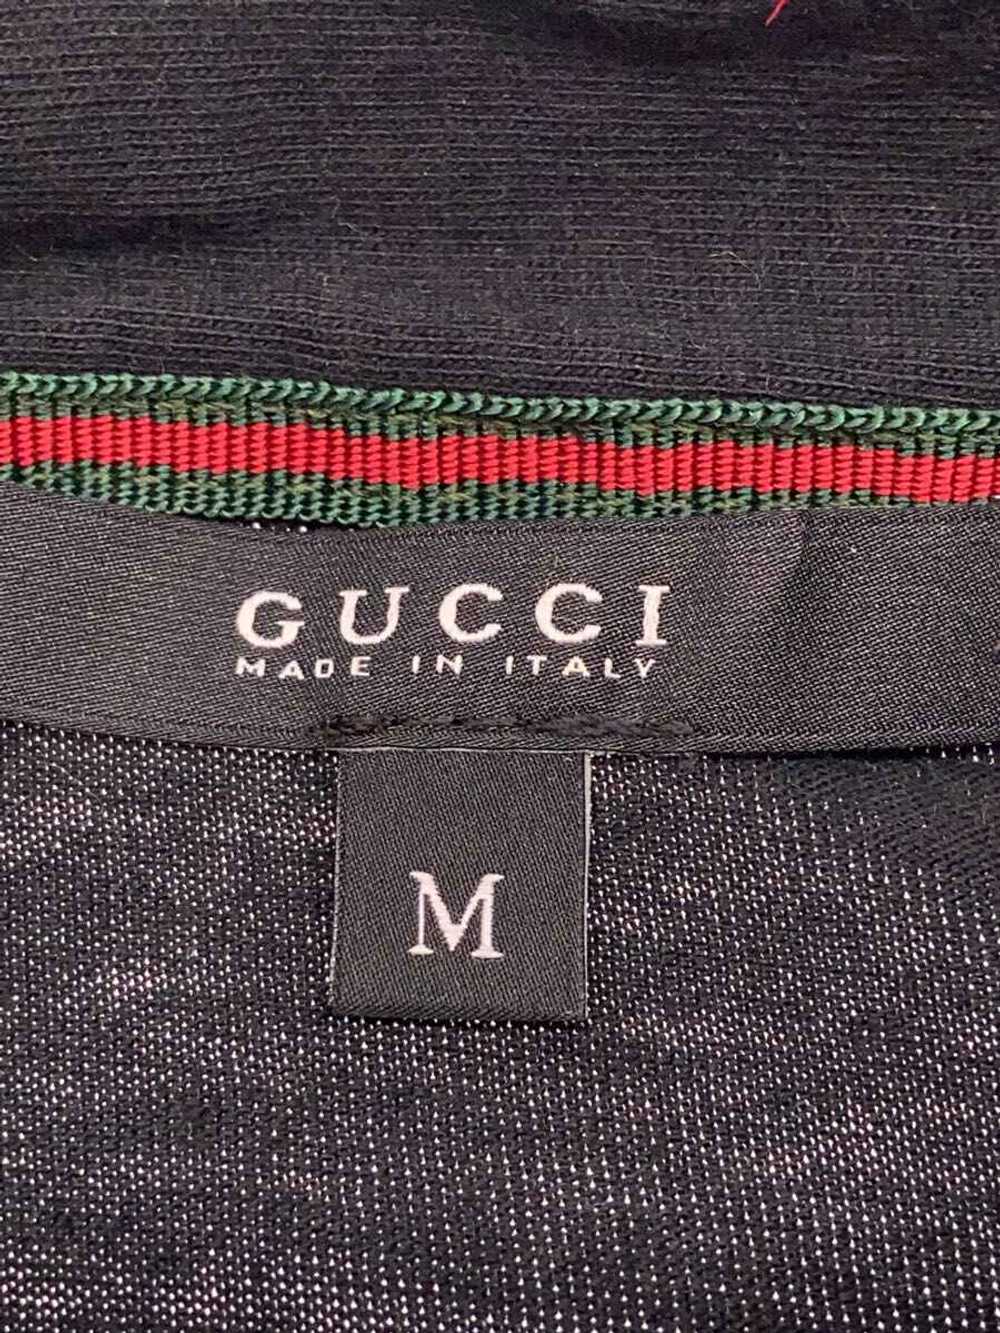 Gucci Polo Shirt/M/Cotton/Blk/171673 Men'S Wear - image 3